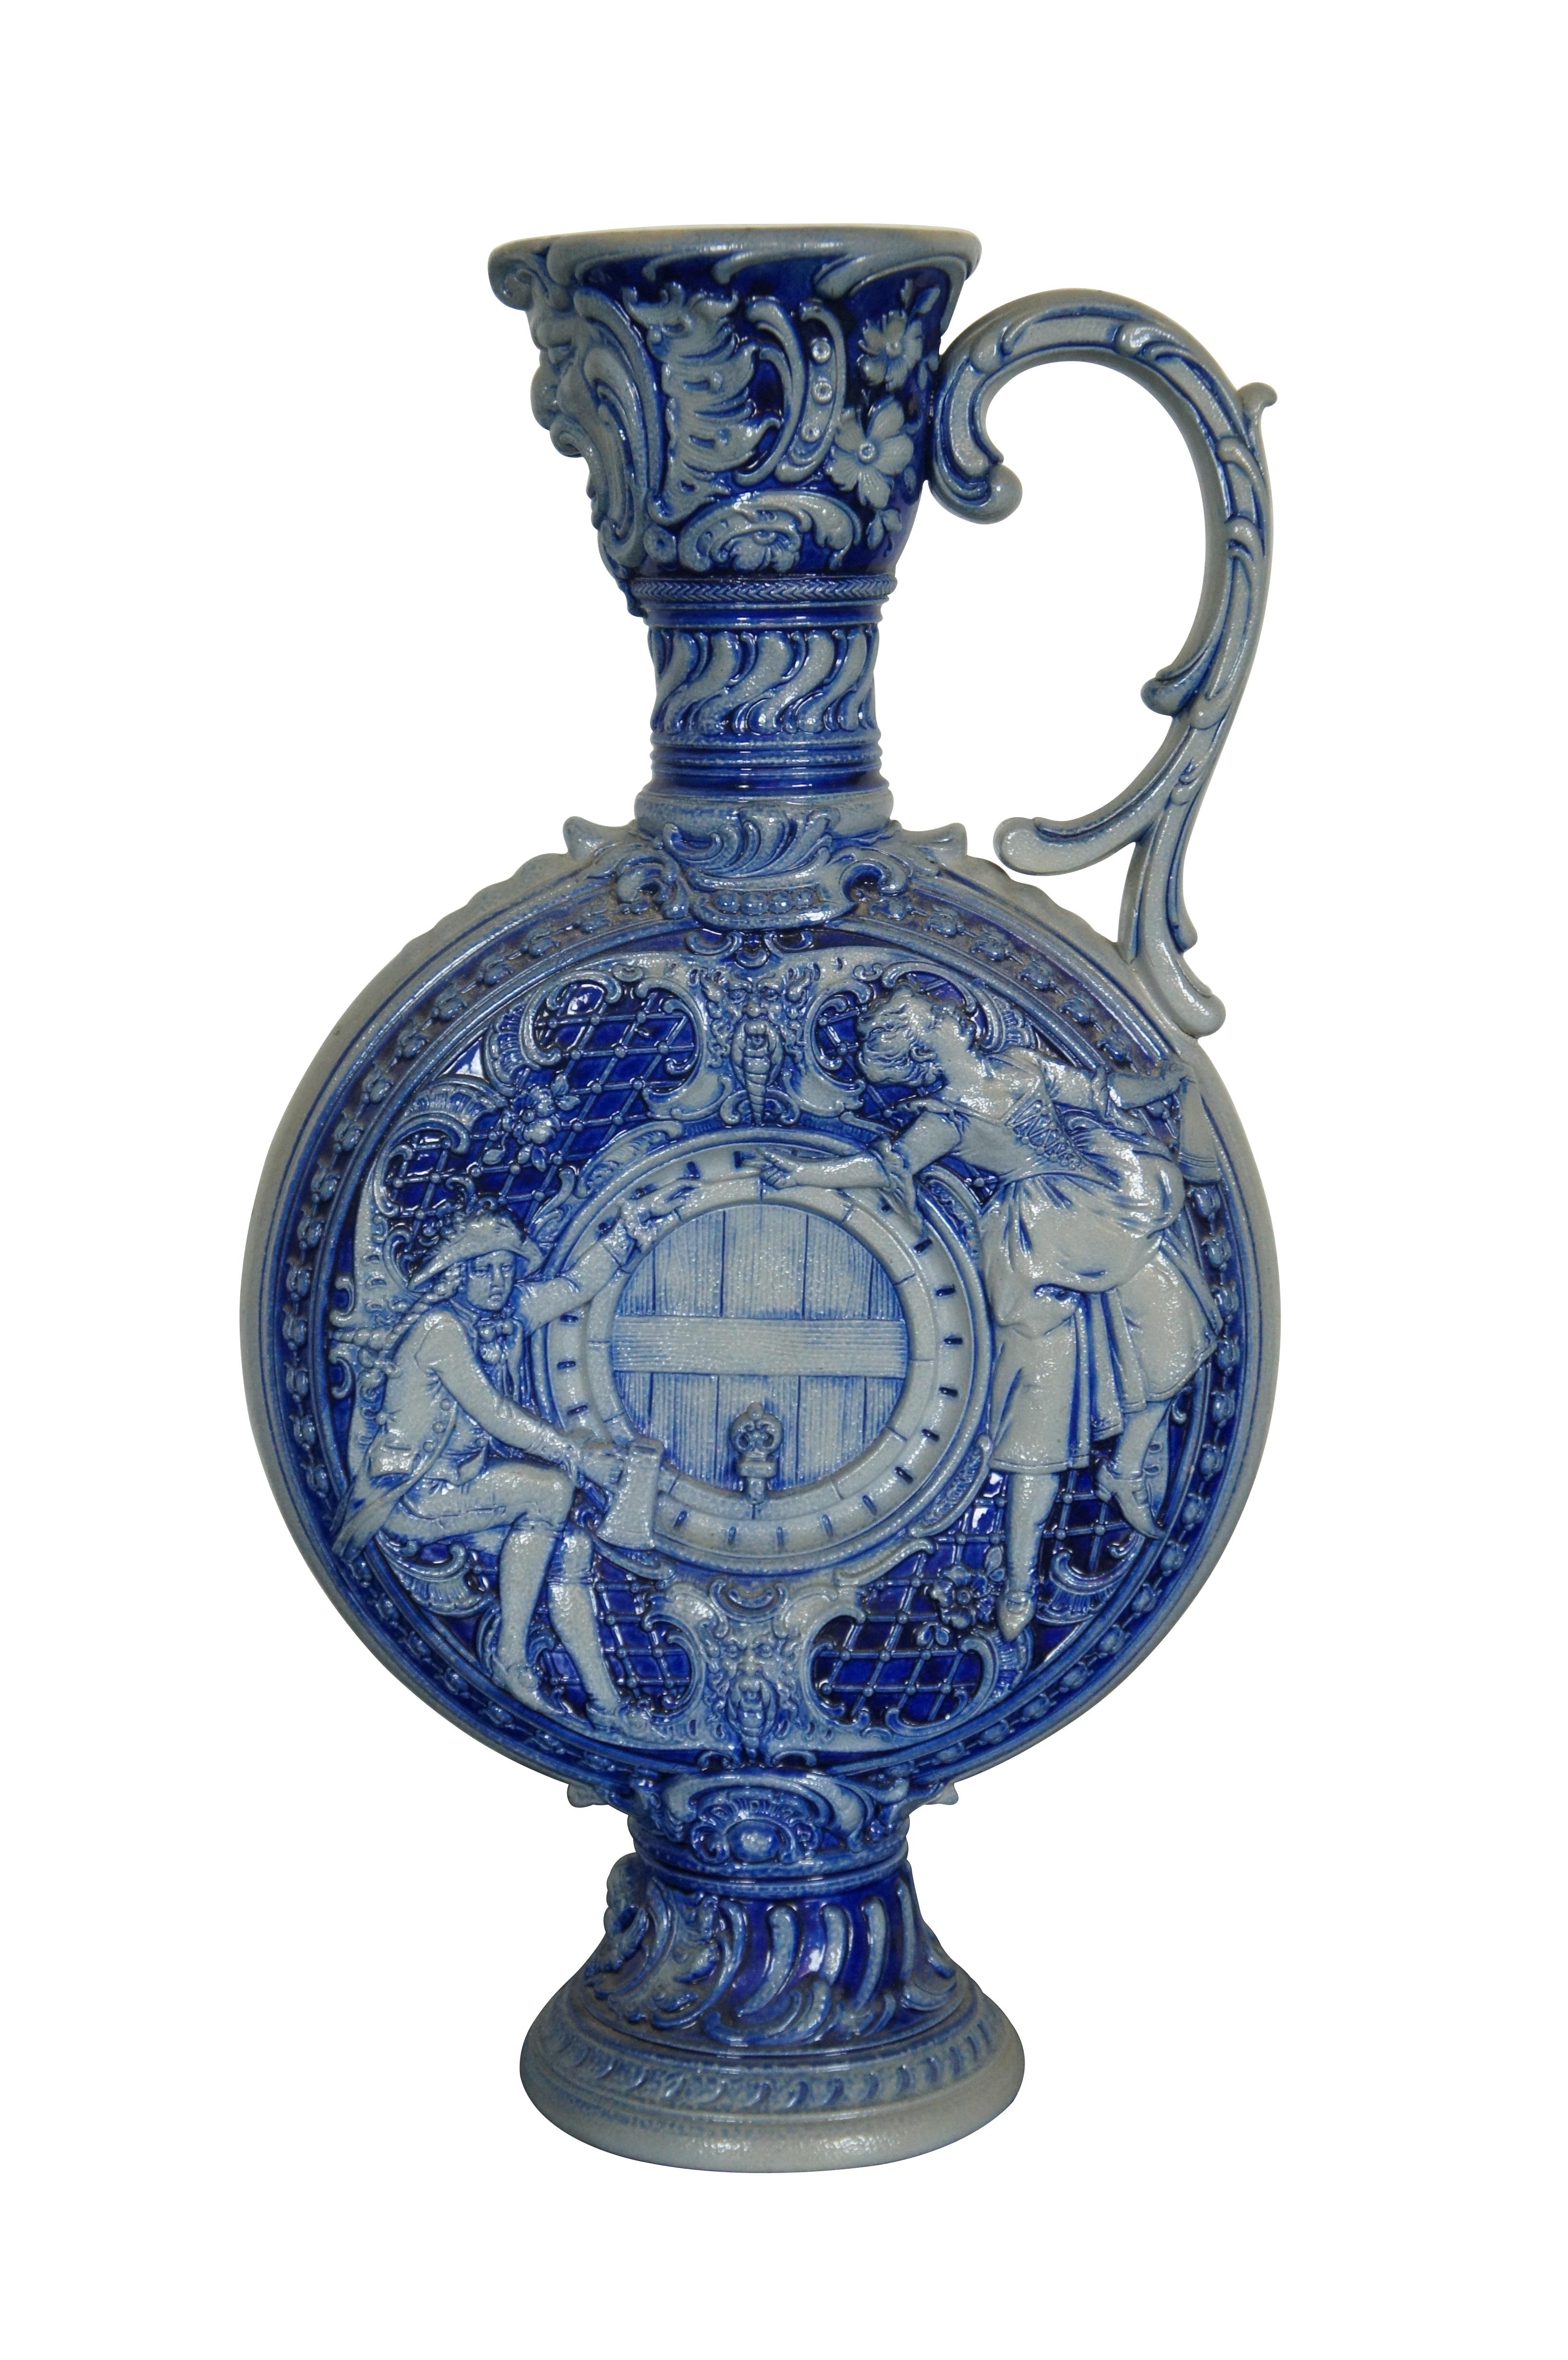 Ancienne carafe, aiguière ou pichet en poterie allemande en grès de Westerwald.  Réalisé en grès à glaçure salée bleu cobalt, il représente Dionysos / Bacchus, des chérubins, un homme ivre buvant à côté d'un tonneau et une femme dansant avec sa